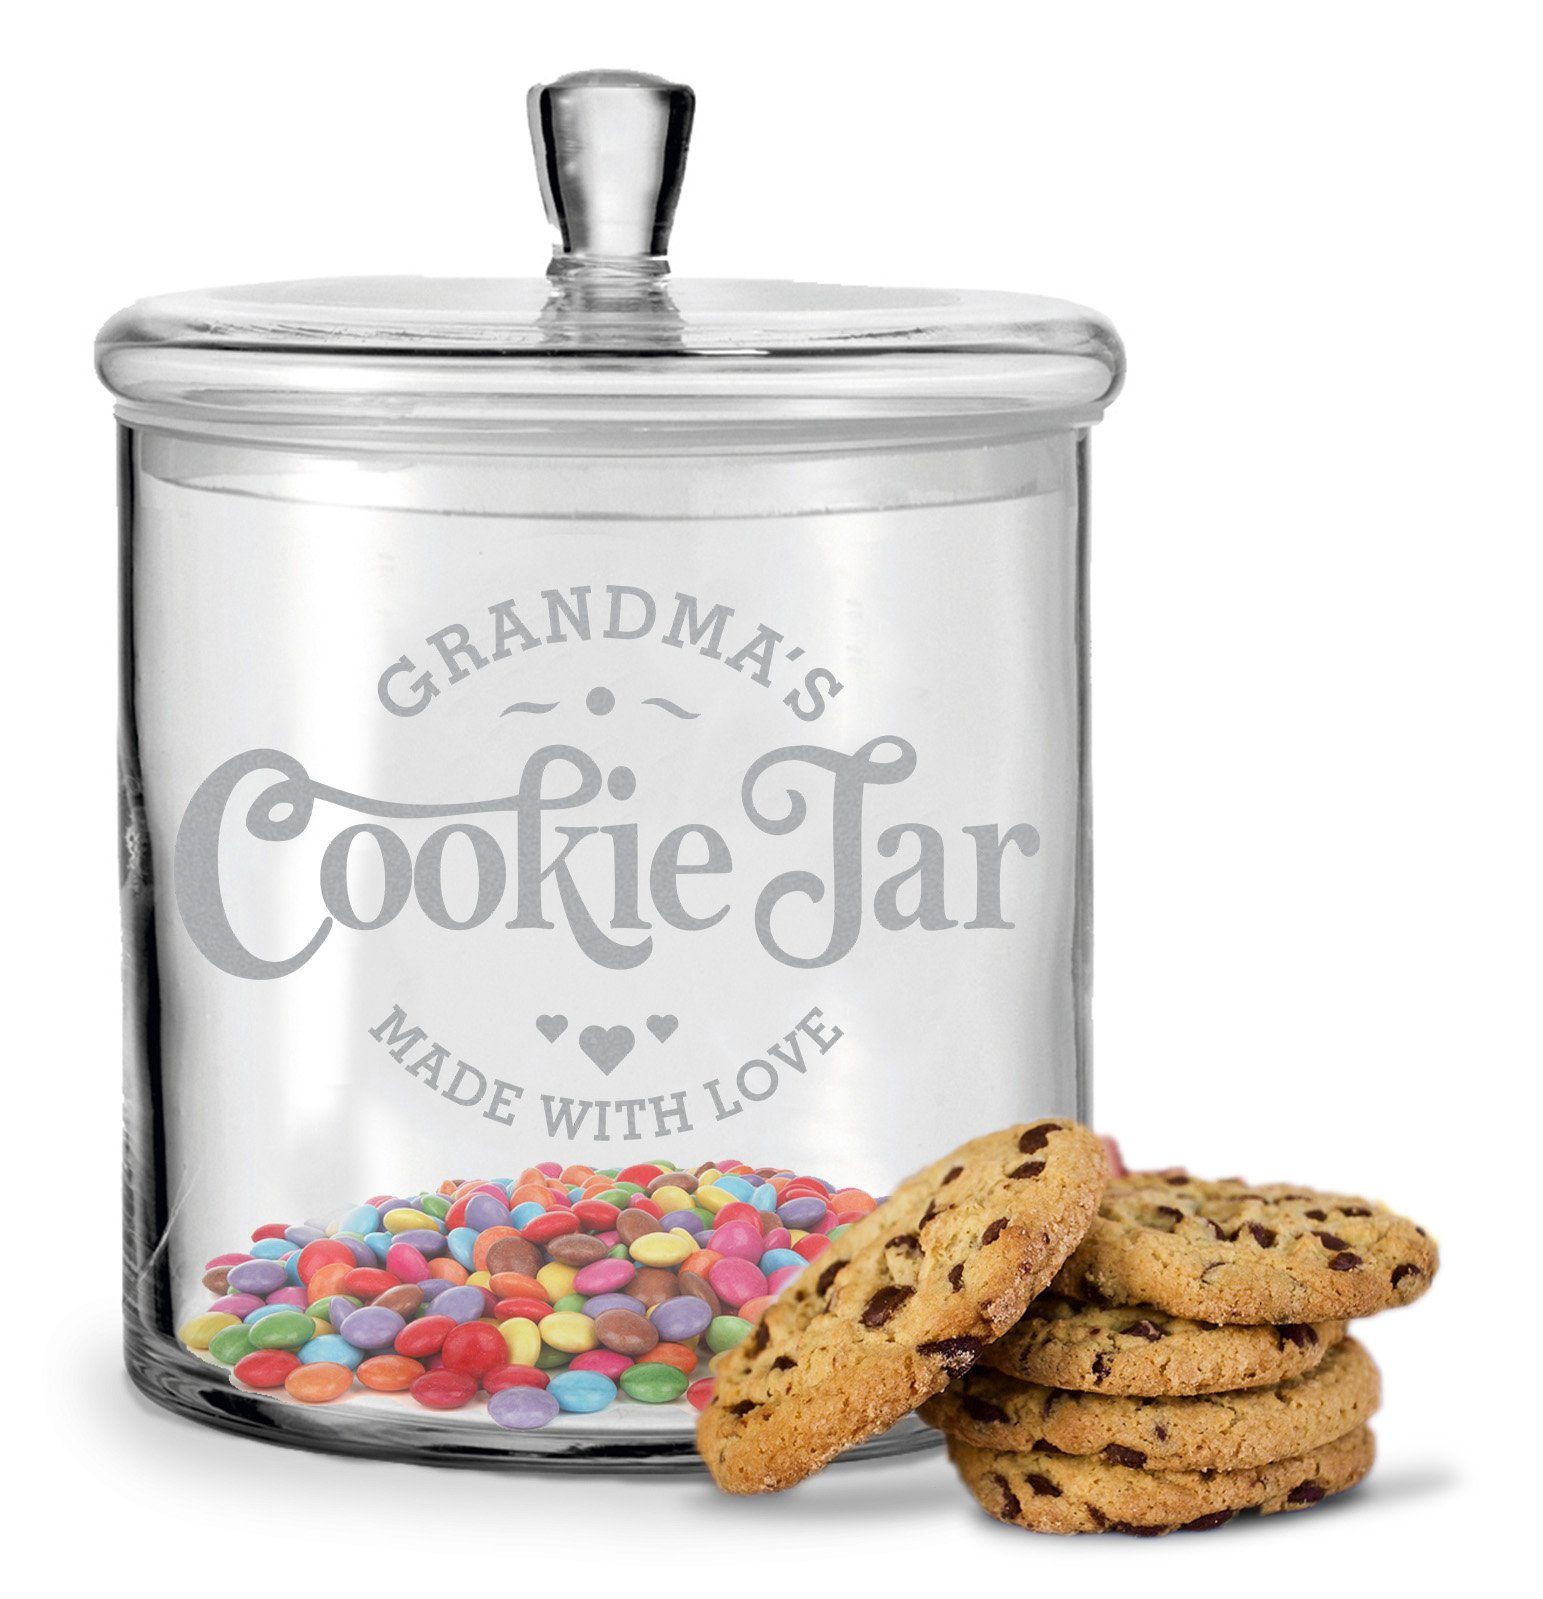 GRAVURZEILE Keksdose mit Gravur Grandmas Cookie Jar - mit luftdichtem Deckel, Glas, Handgefertigte Glasdose für die Beste Oma der Welt